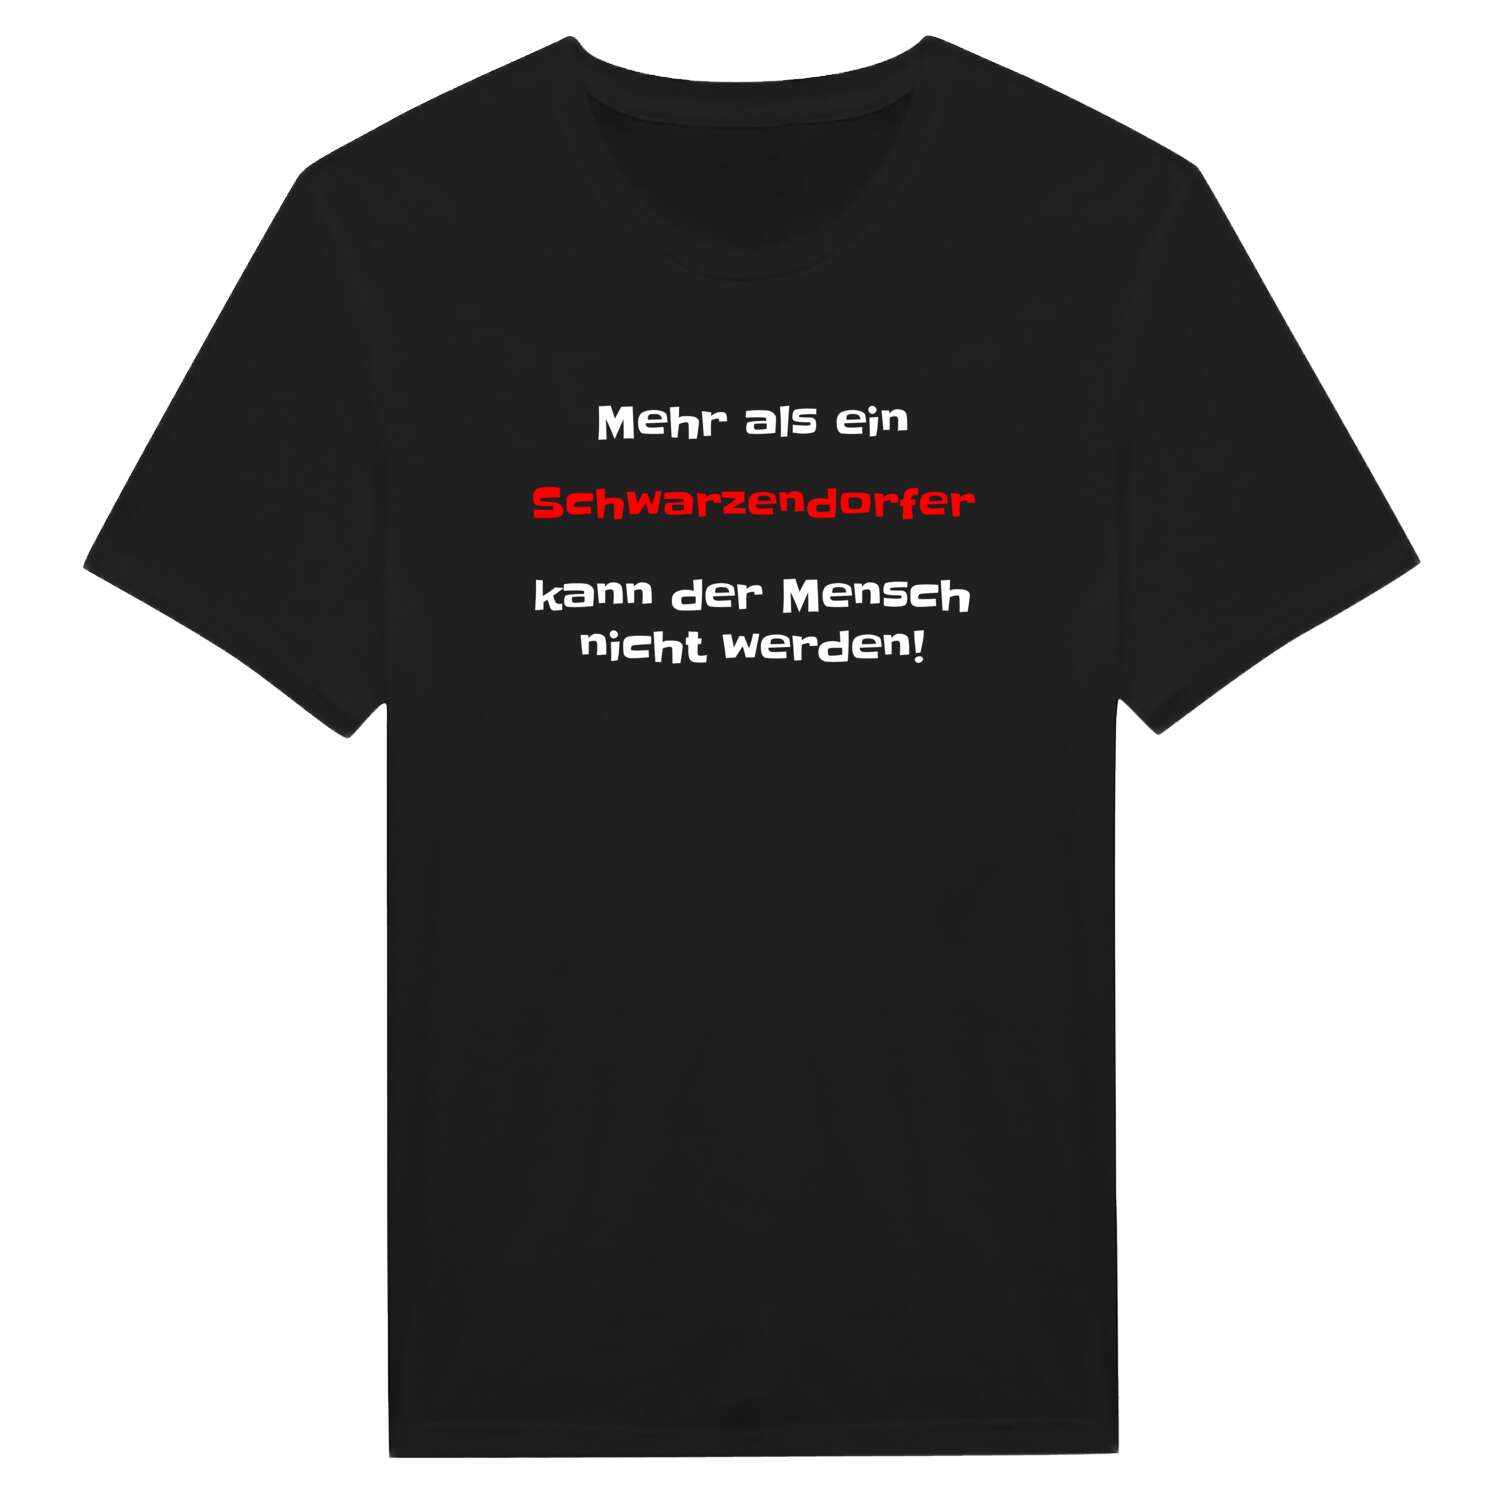 Schwarzendorf T-Shirt »Mehr als ein«